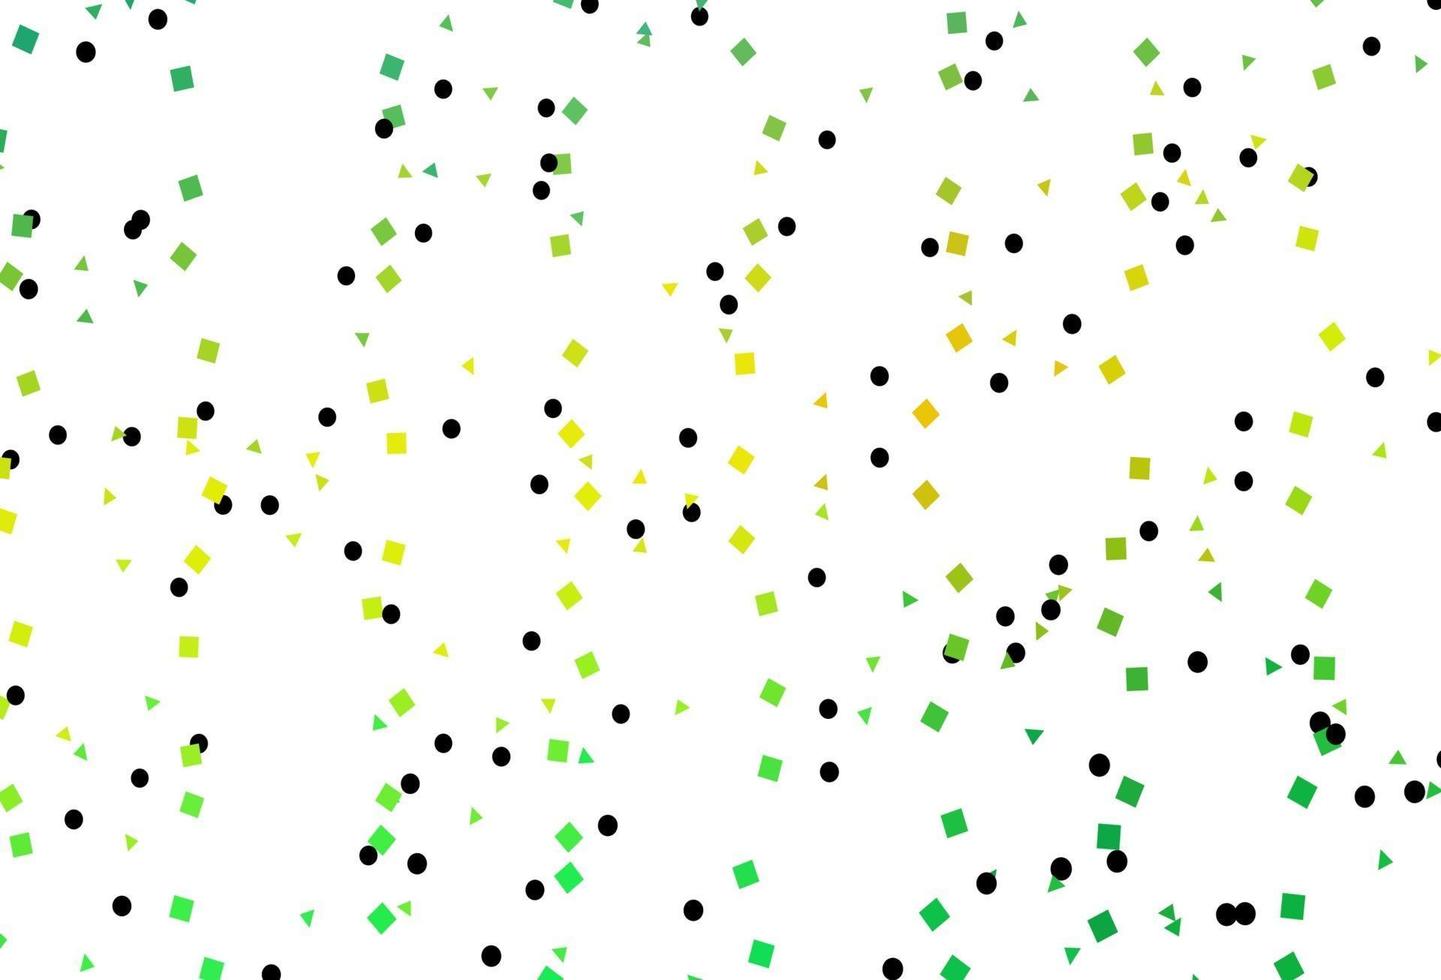 layout de vetor verde e amarelo claro com círculos, linhas, retângulos.